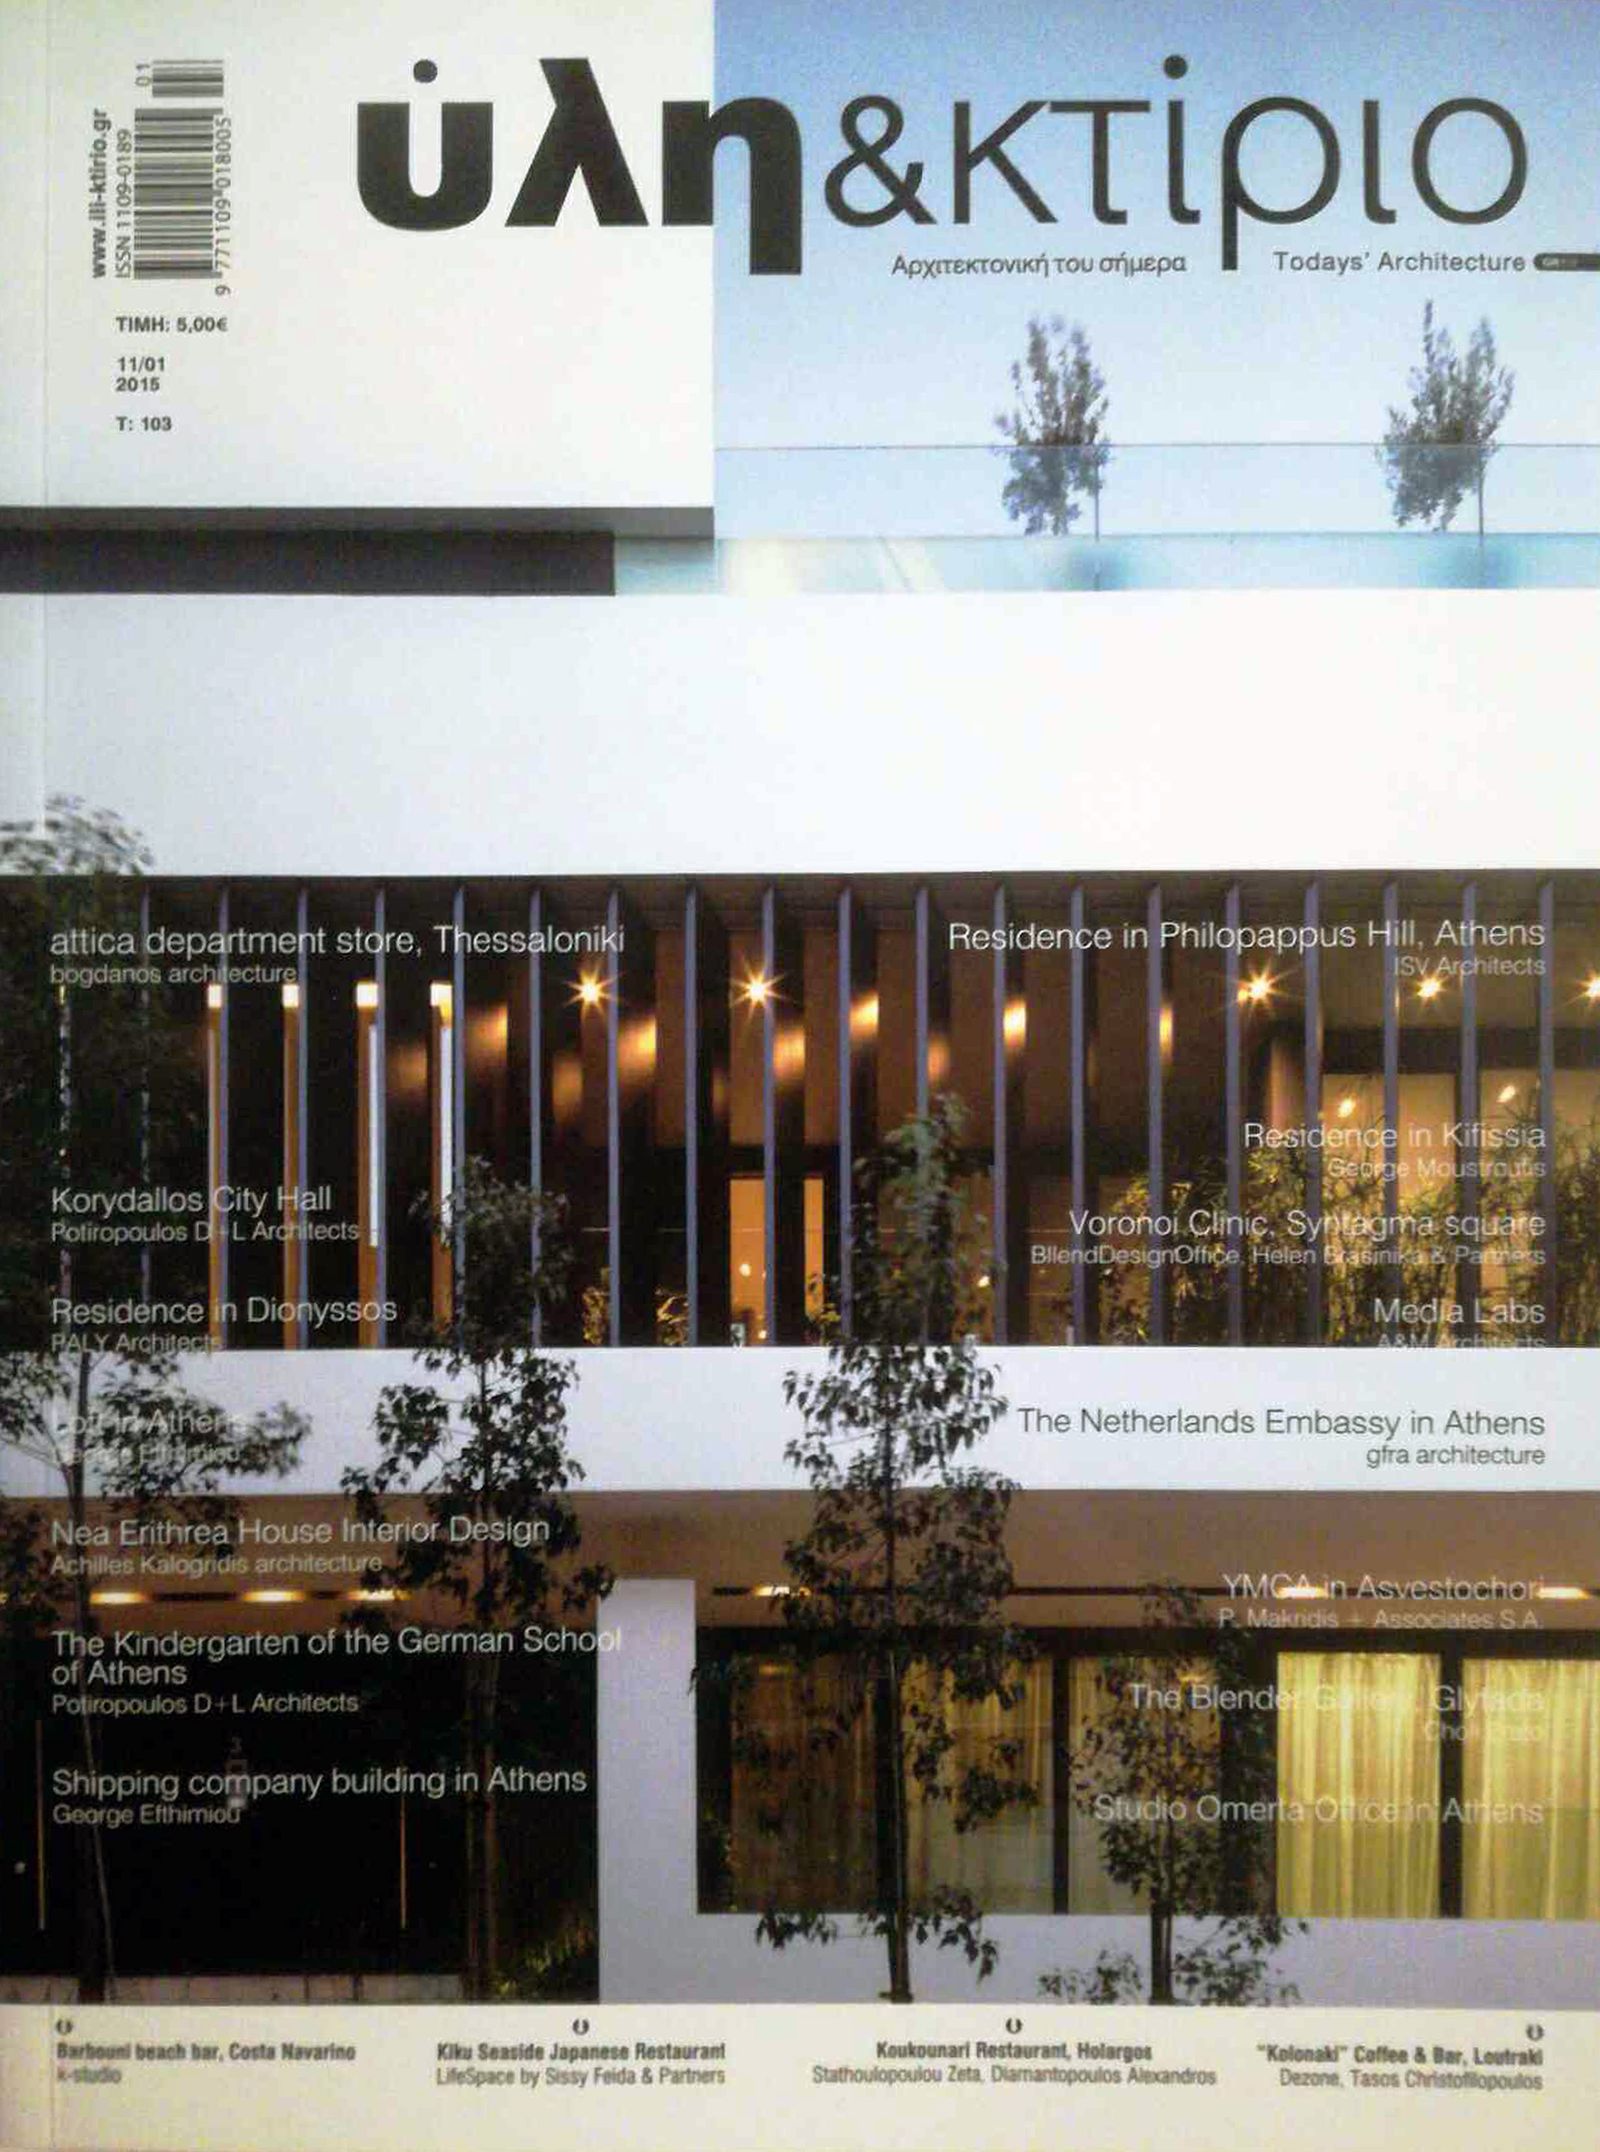 Δημοσίευση έργου Ερατούς Χολή ‘Blender Gallery’ στο περιοδικό ‘’Υλη & Κτίριο’, Τεύχος 103